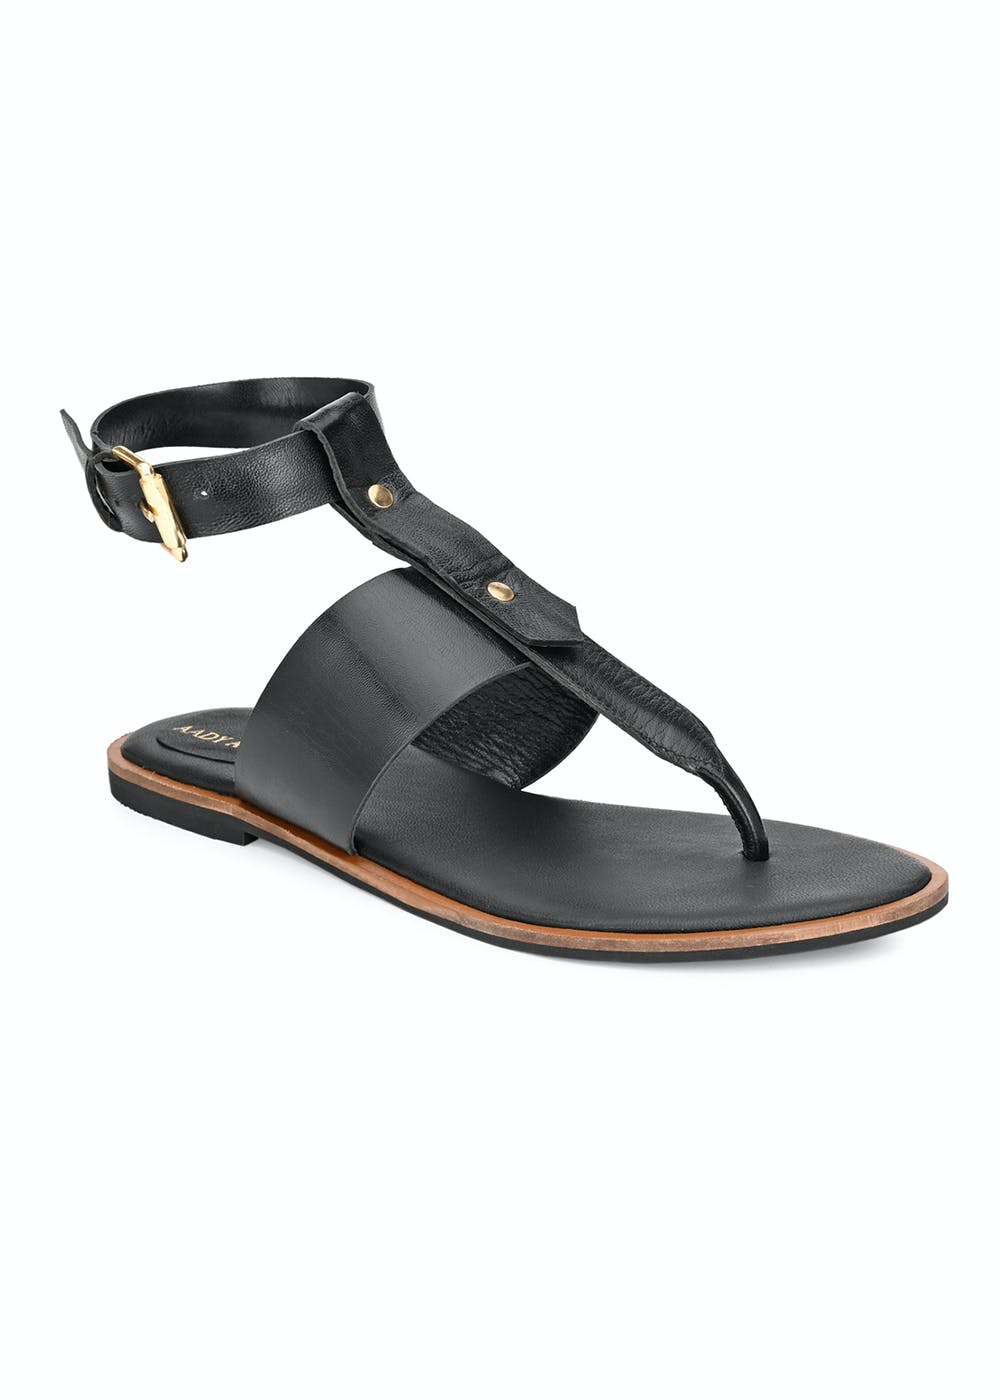 Contrast Trim Detail Black T-Strap Sandals